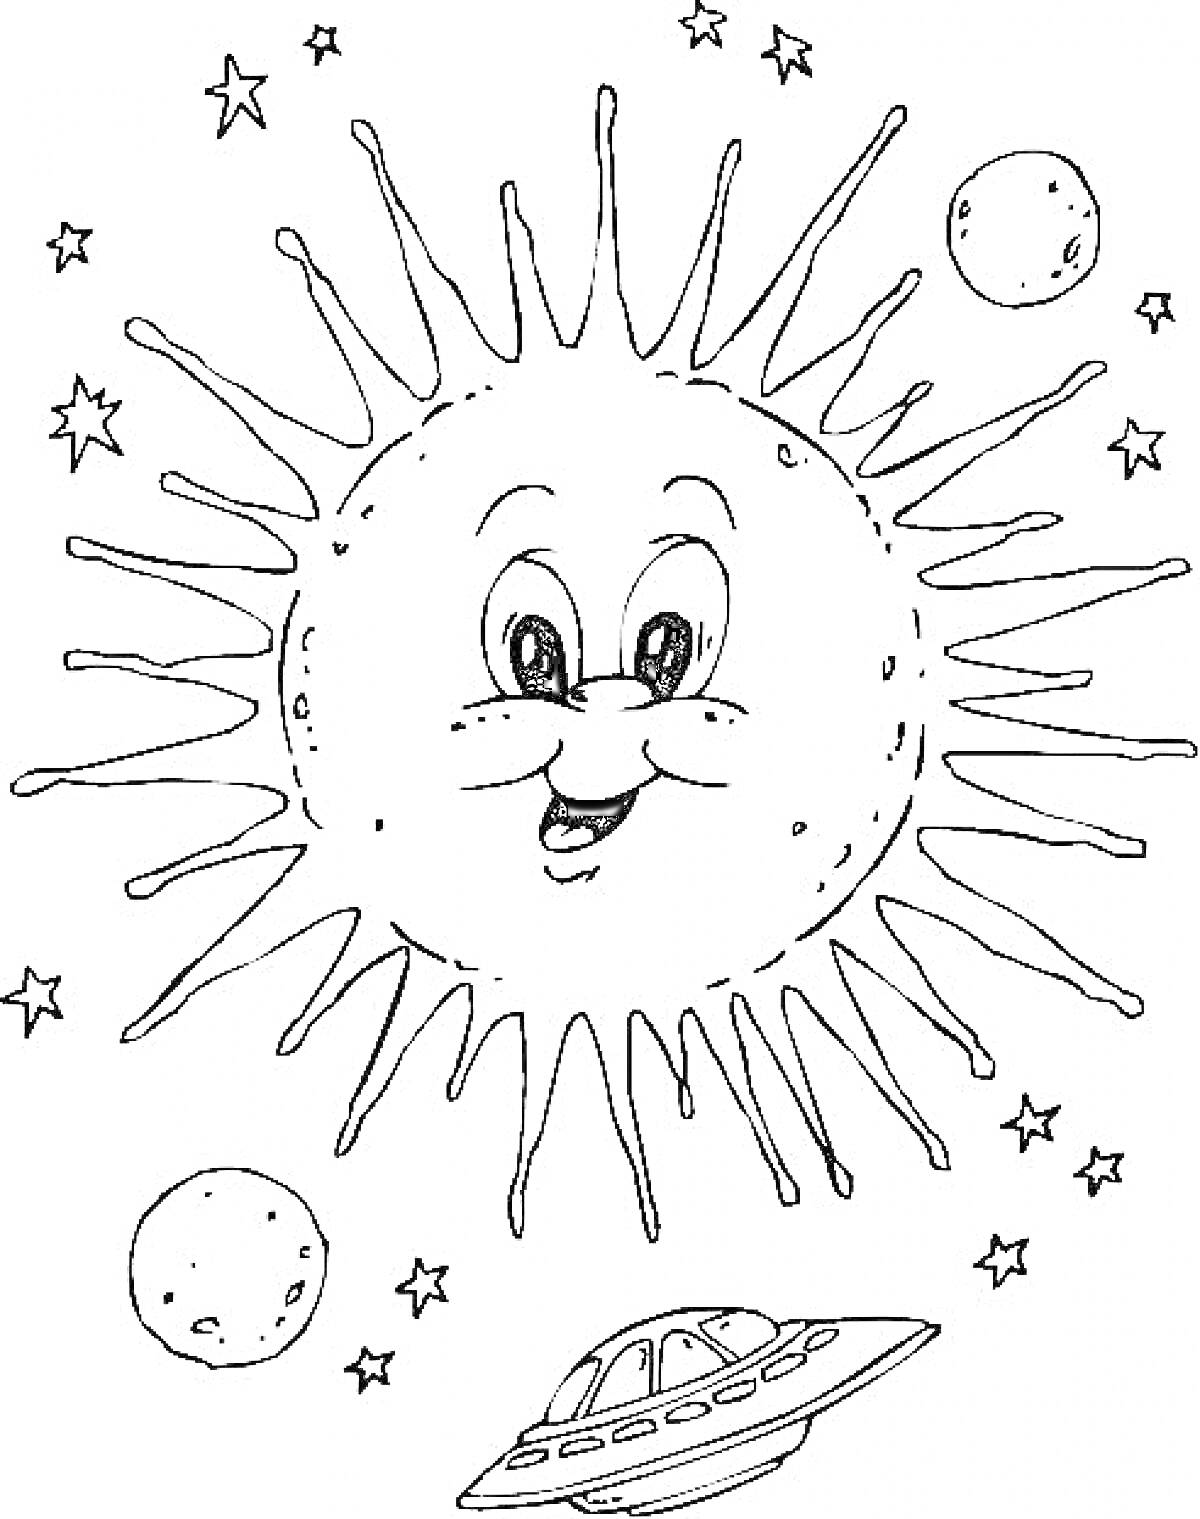 Улыбающееся Солнце с лучами, звезды, планеты и летающая тарелка